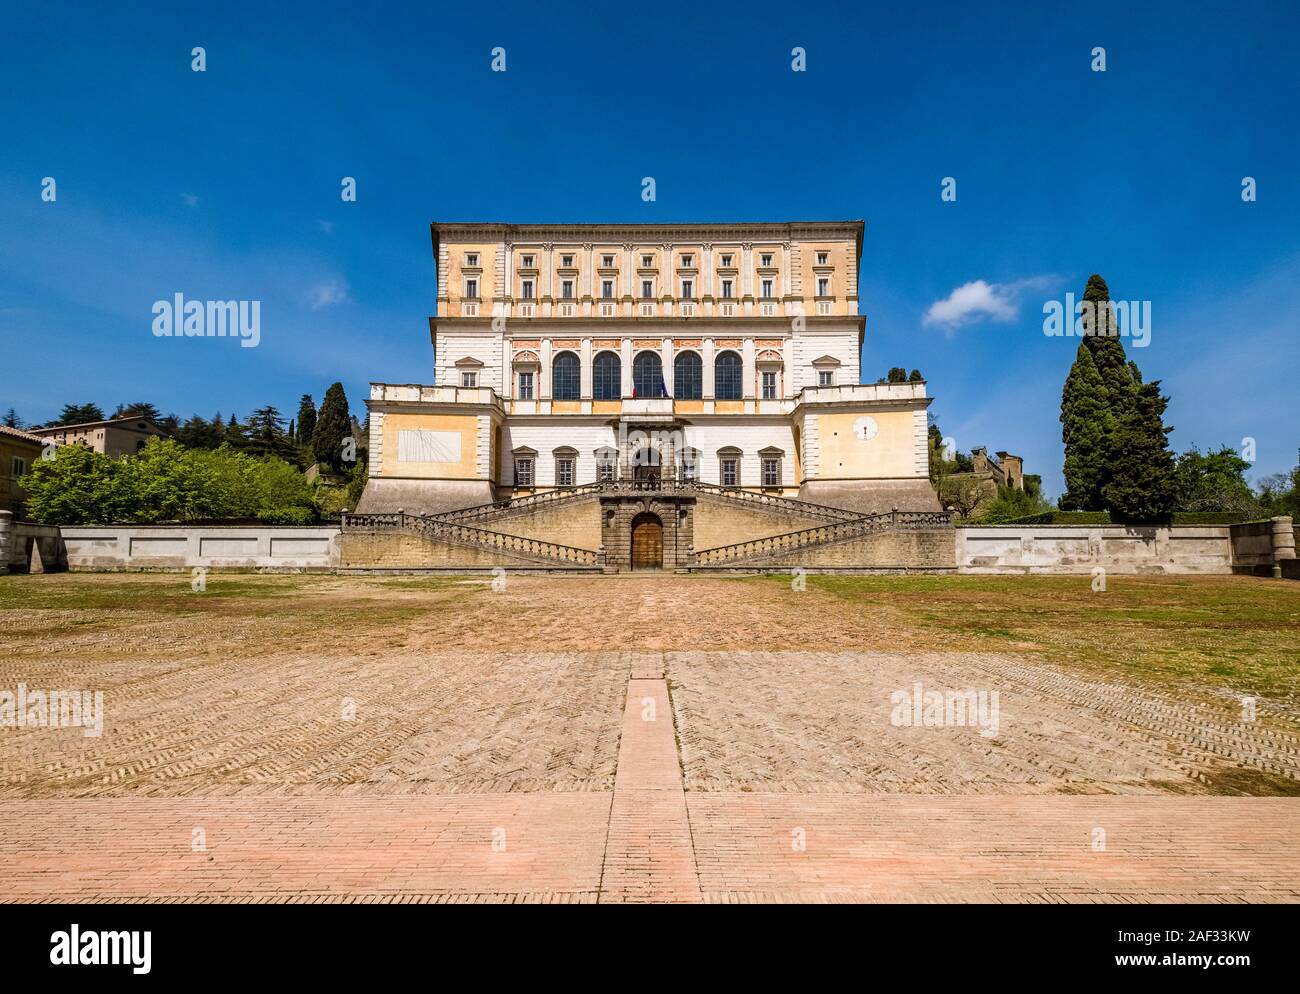 La facciata principale della Villa Farnese, nota anche come Villa Caprarola, una massiccia costruzione rinascimentale Foto Stock